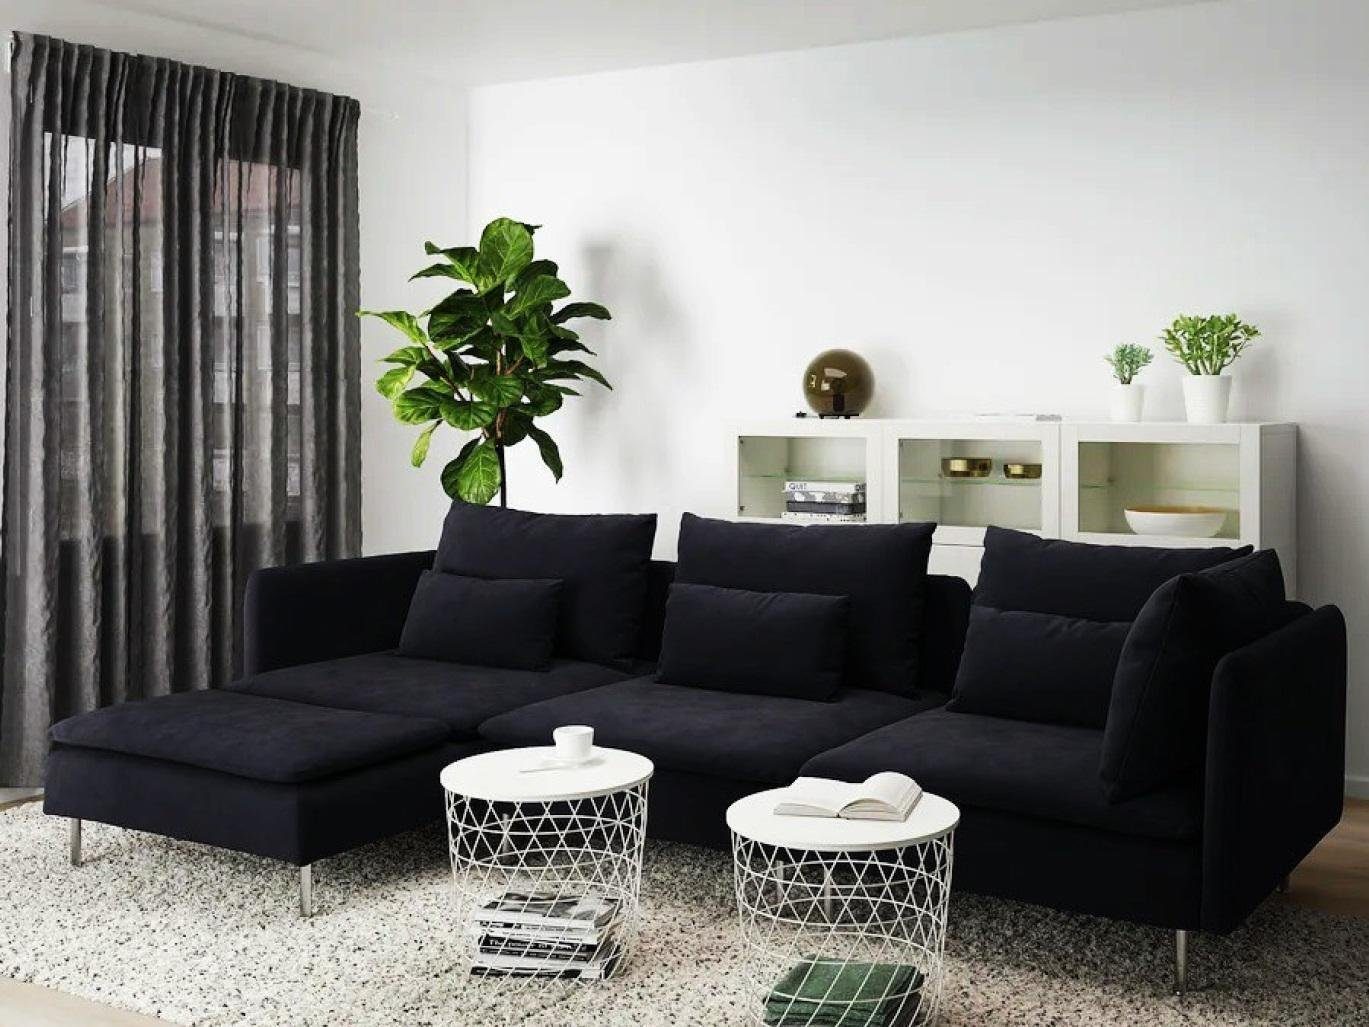 JVmoebel Chaiselongue Luxus Möbel Schwarz Design Textil Chaiselongue Sofa Neu Modern